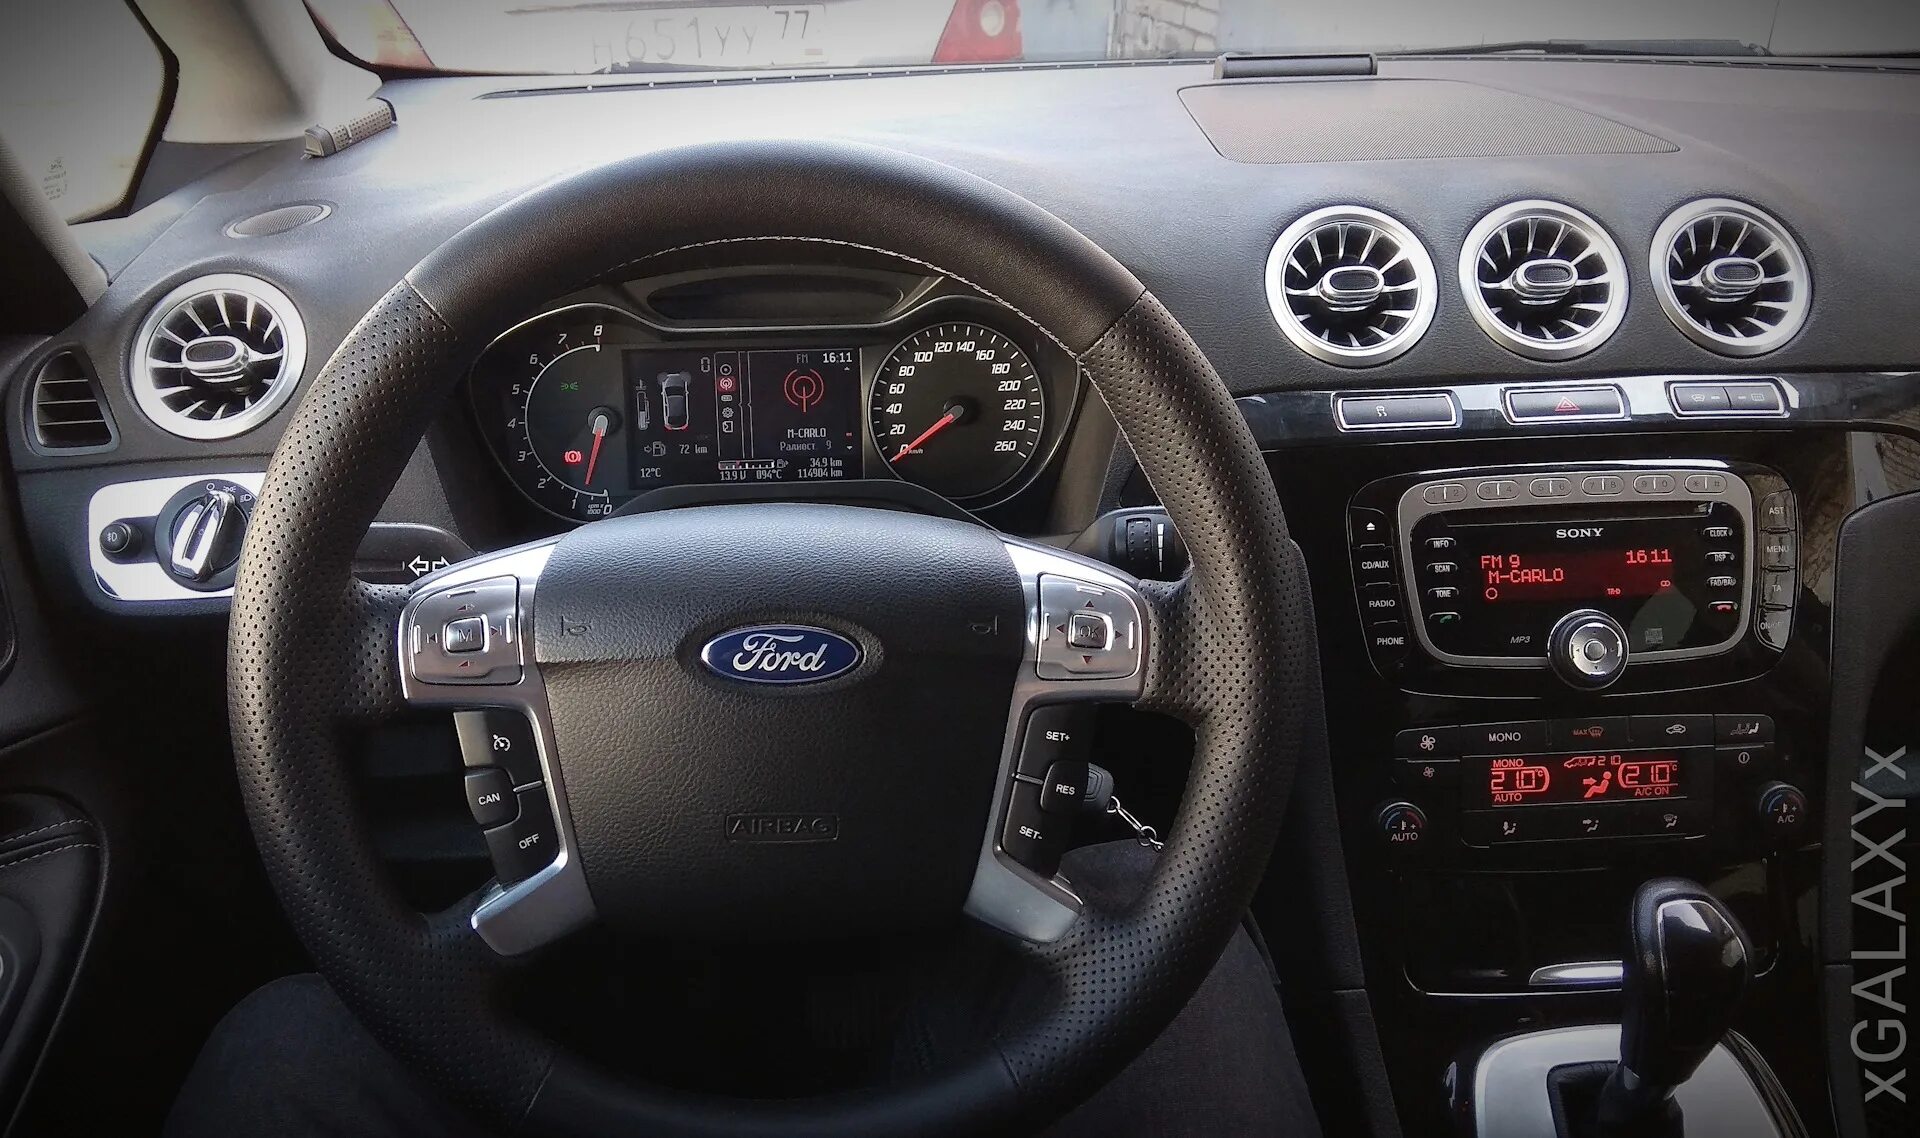 Звук торпеда. Панель Форд галакси 2008. Торпеда Ford Galaxy. Ford Galaxy dashboard. Торпедо Форд галакси 2013 Титаниум.